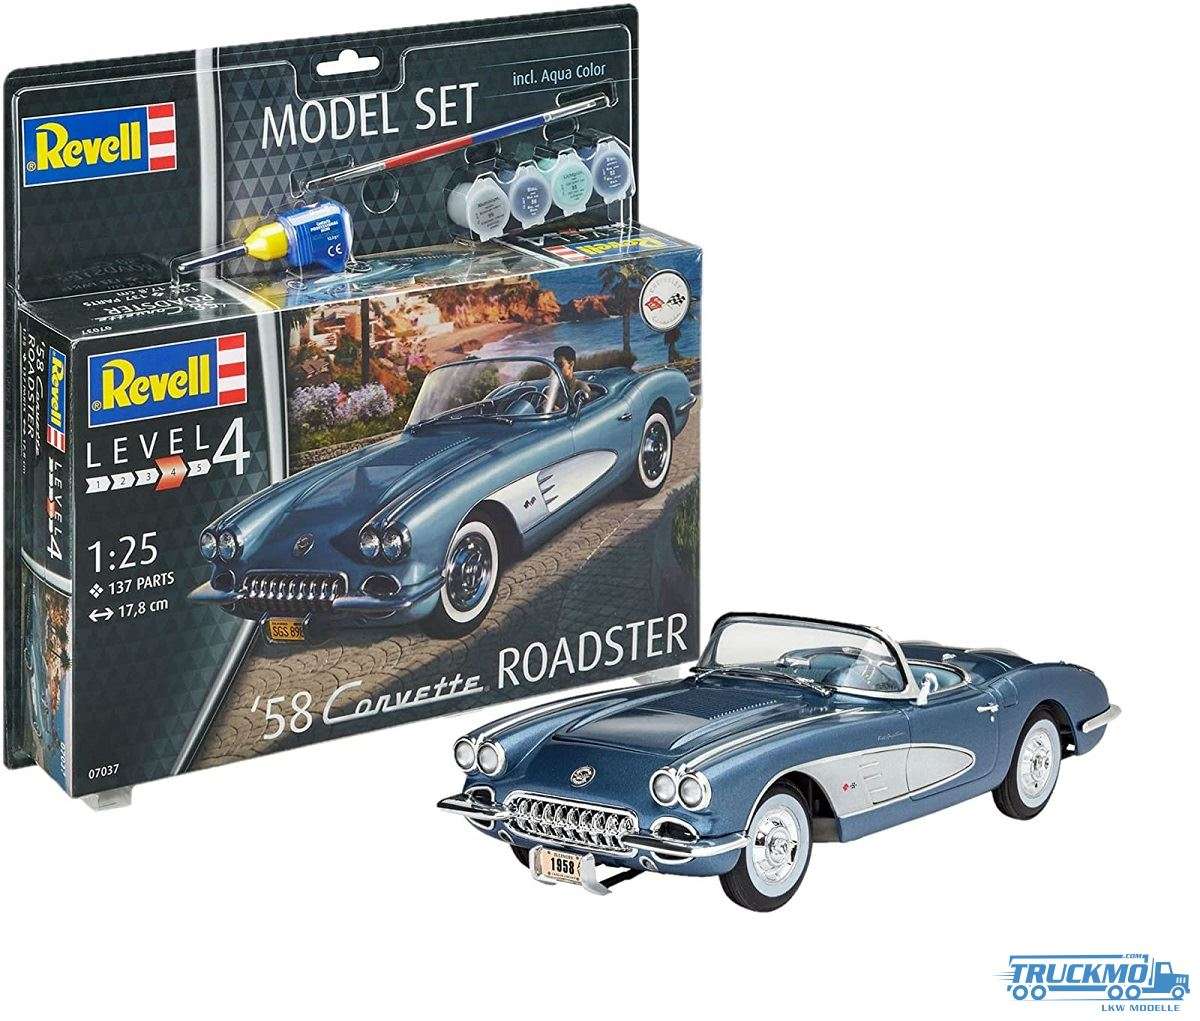 Revell Model Sets Corvette Roadster 58 1:25 67037